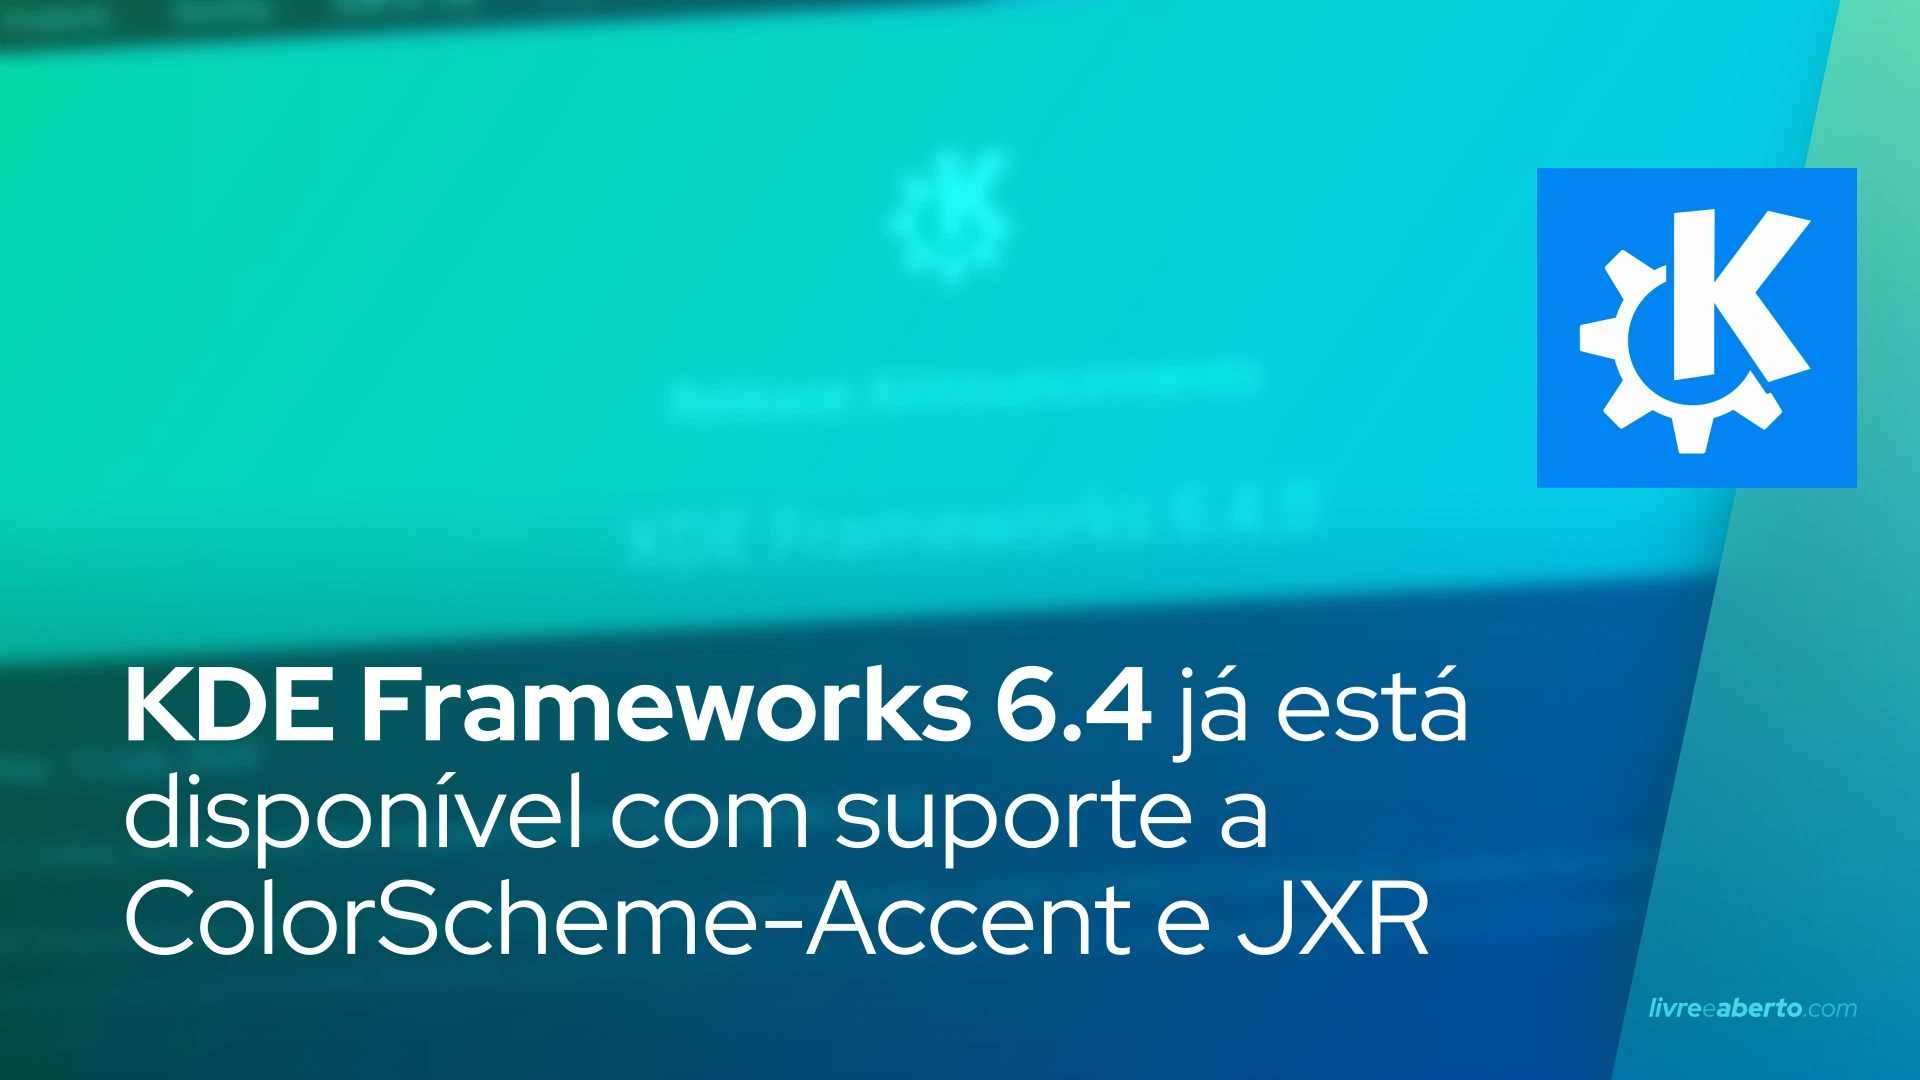 KDE Frameworks 6.4 já está disponível com suporte a ColorScheme-Accent e JXR